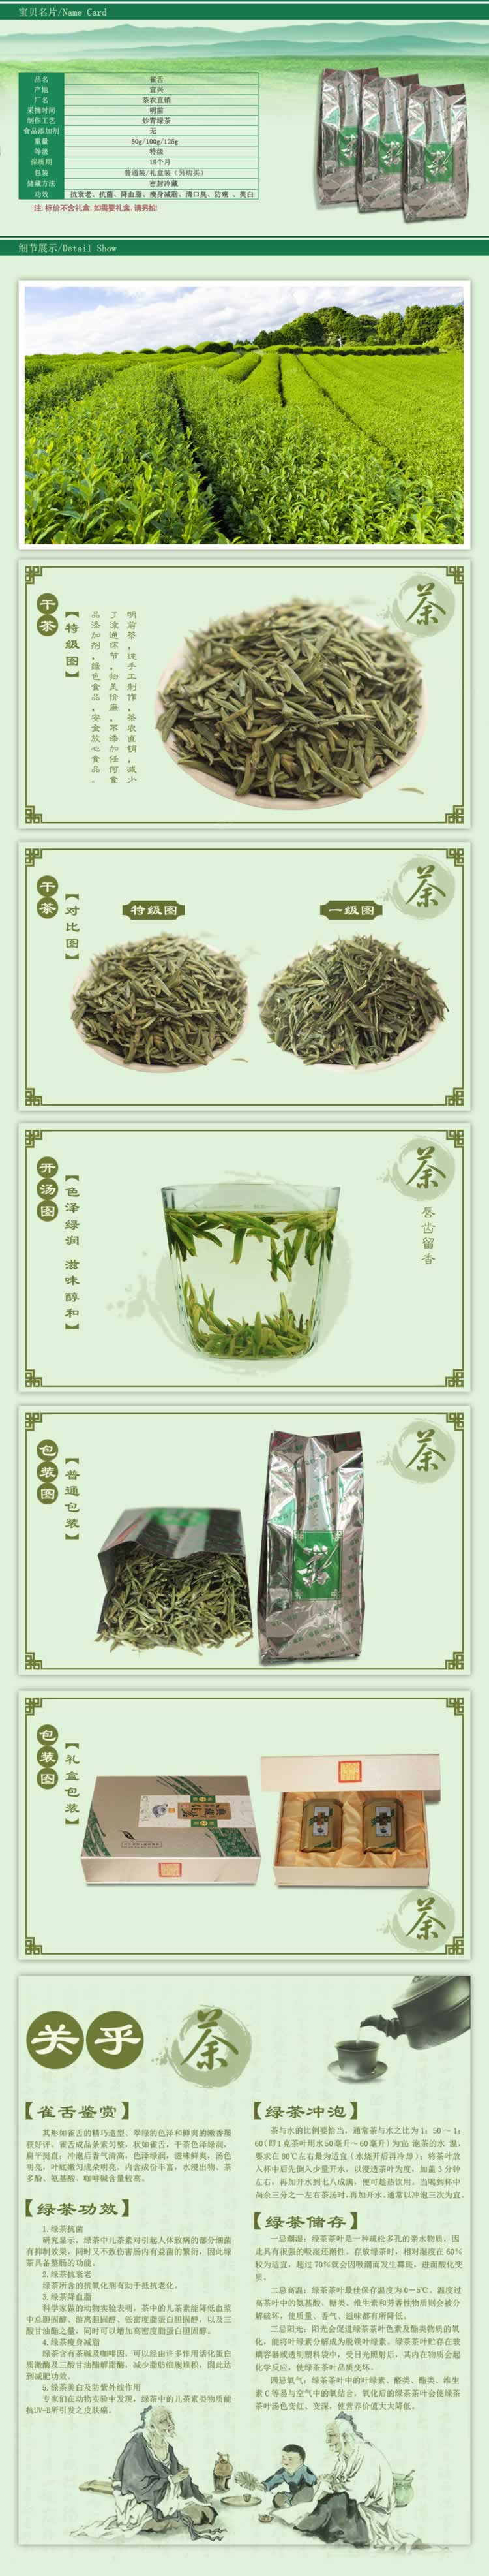 绿茶花茶保健茶叶描述模板